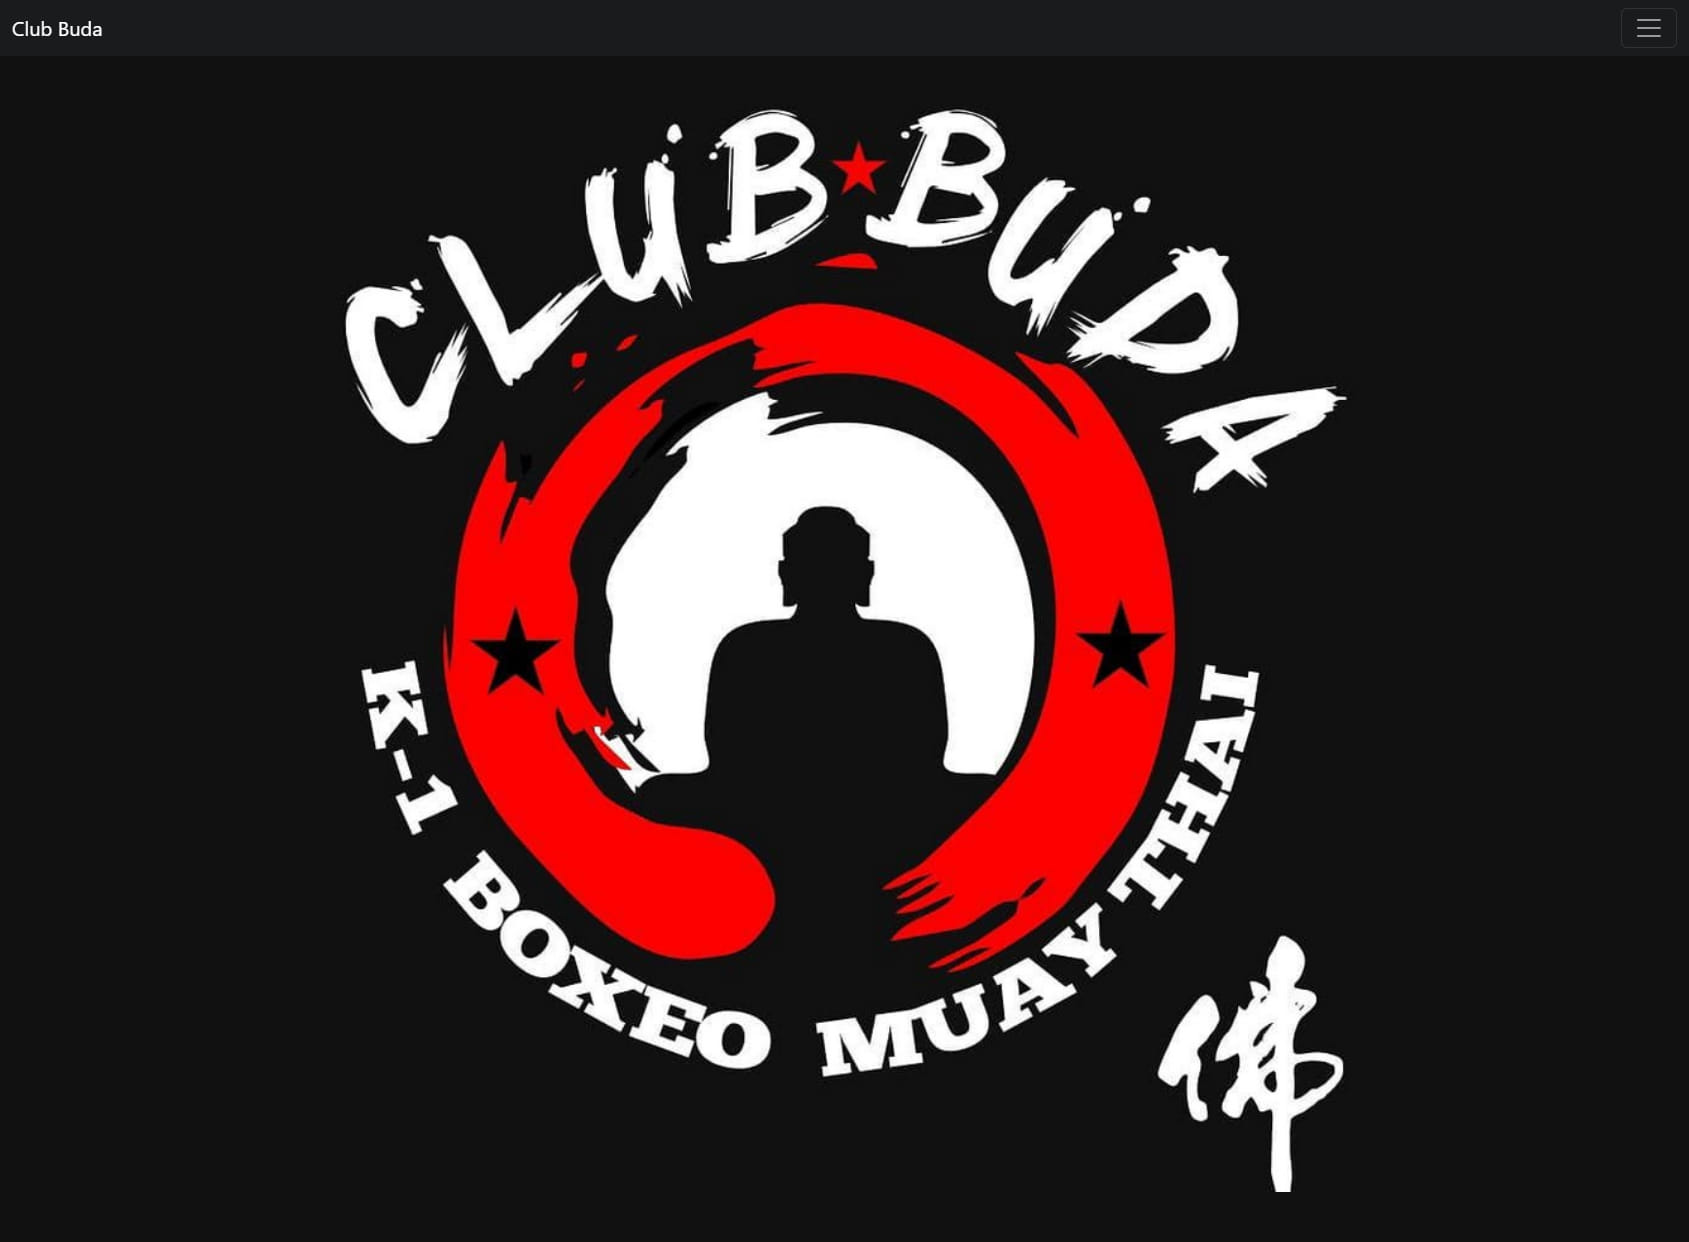 CLUB BUDA, Kick Boxing,Boxeo, Muay thai